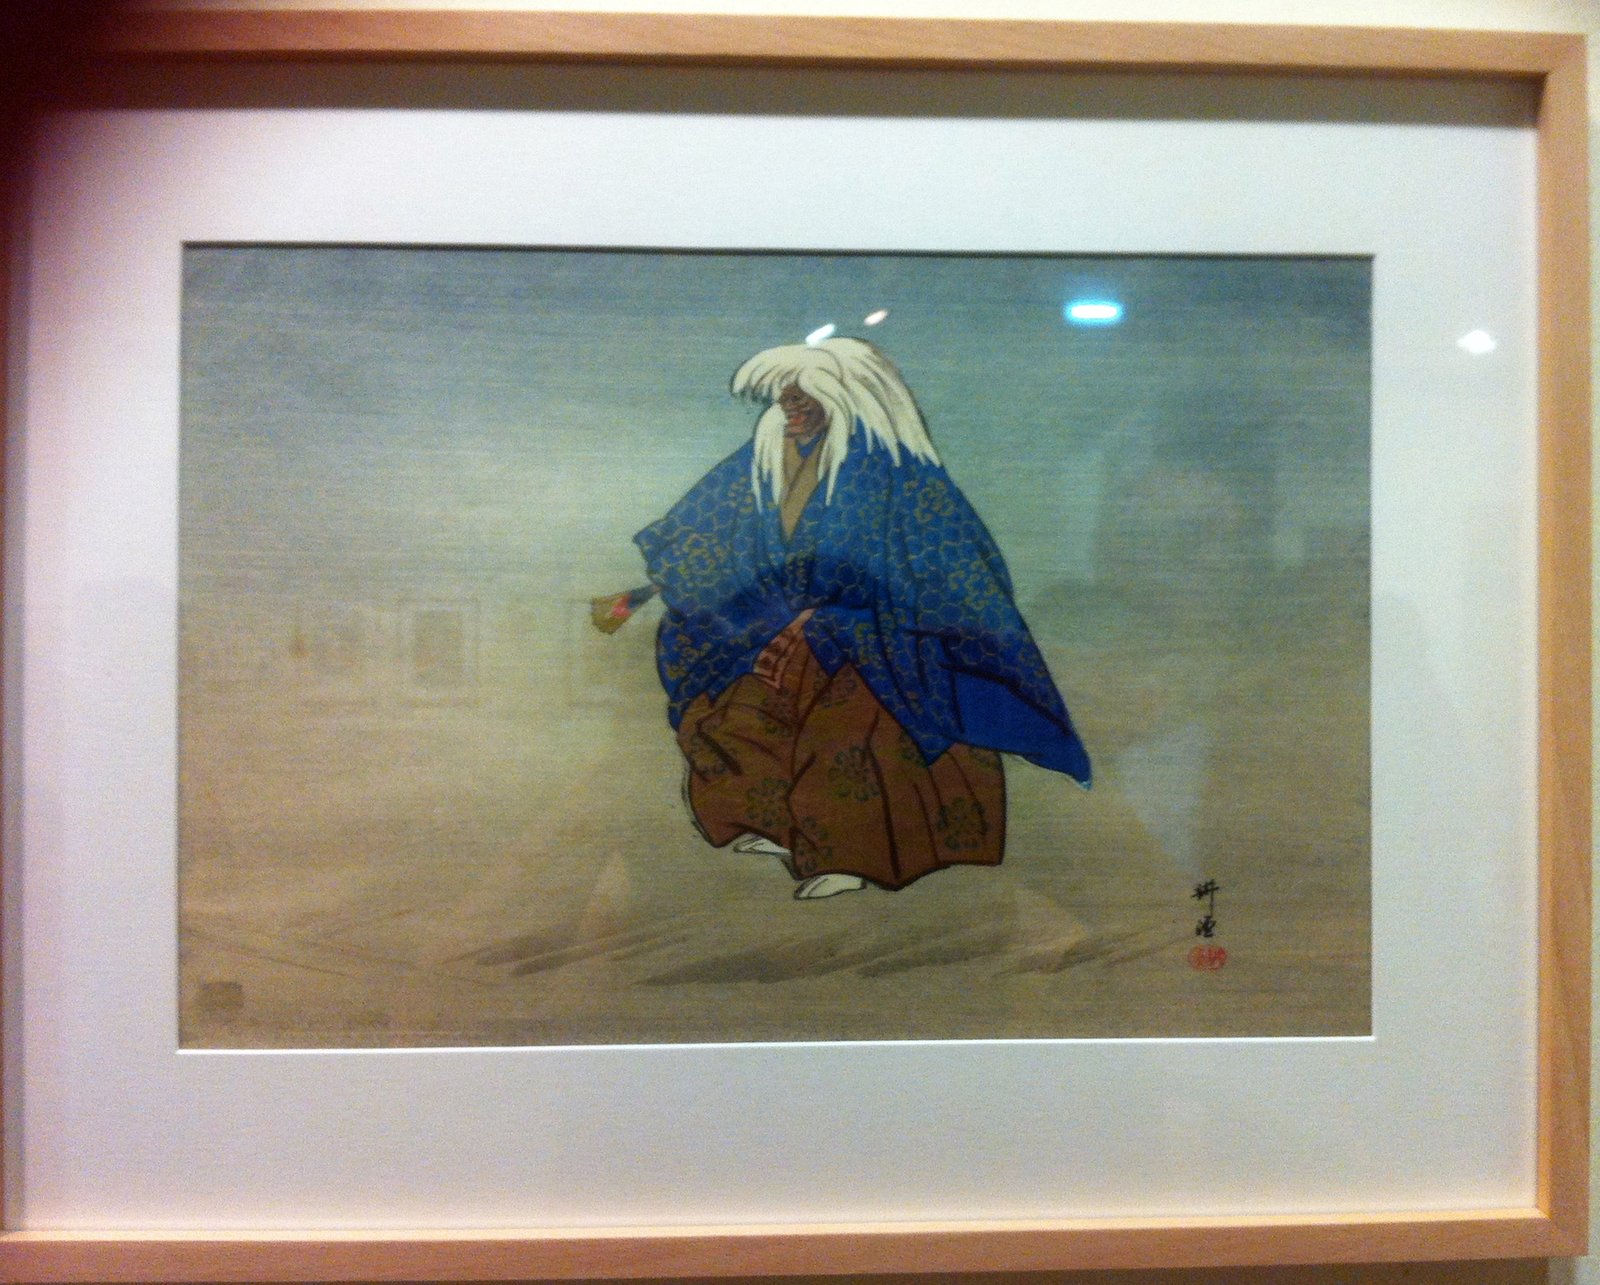 Las obras de Kôgyo Tsuikoka destacan frente los más habituales grabados de los periodos Edo y Meiji.